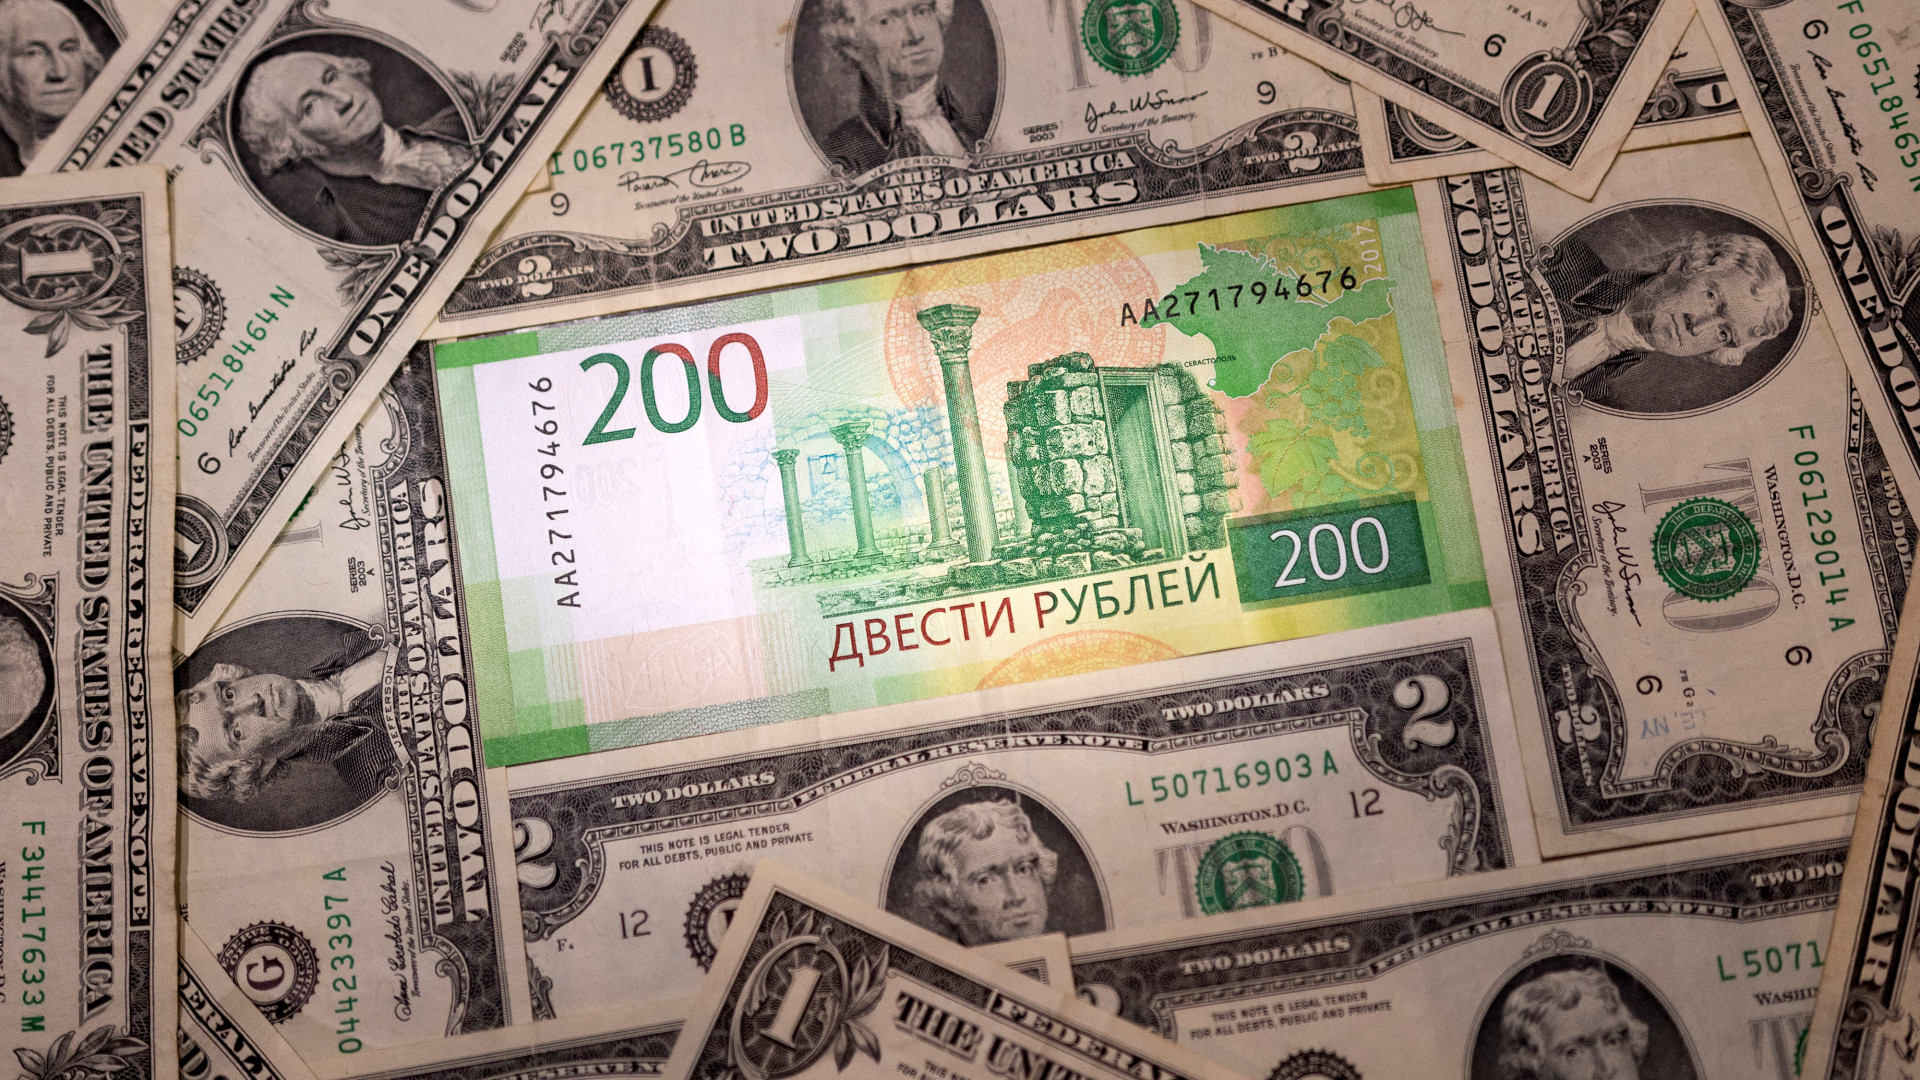 Рубли на доллары это покупка или продажа. Валюта. Покупка доллара. Доллары в рубли. Доллар (валюта).